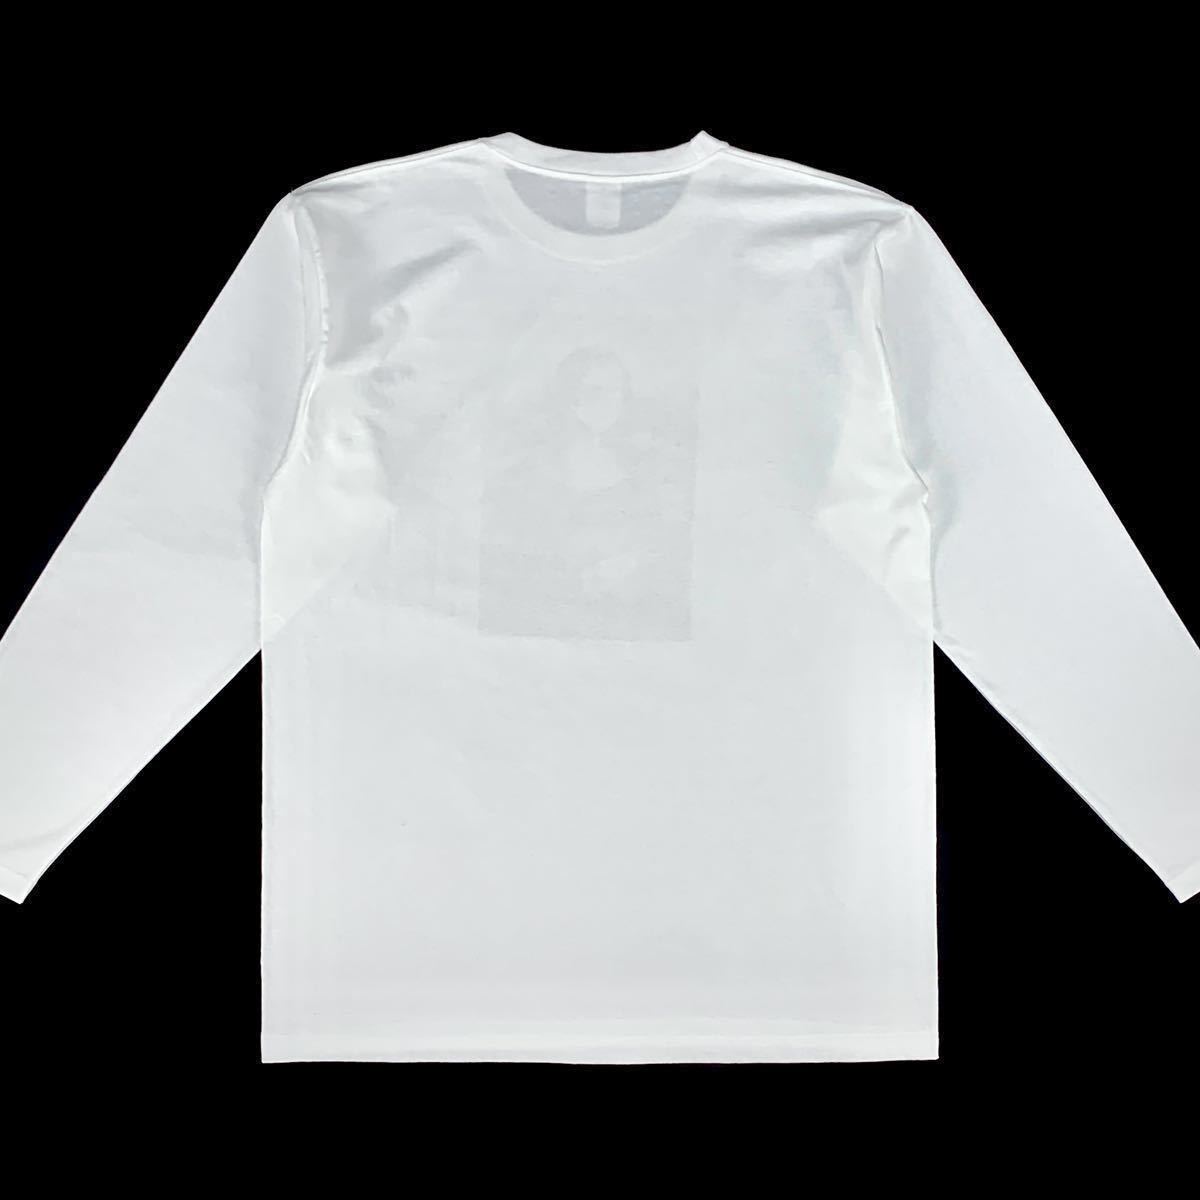 新品 未使用 モナリザ マスク ダヴィンチ 絵画 アート パロディ 大きい オーバー サイズ ビッグ ロンT 長袖 Tシャツ ユニセックス  4XL(5L)